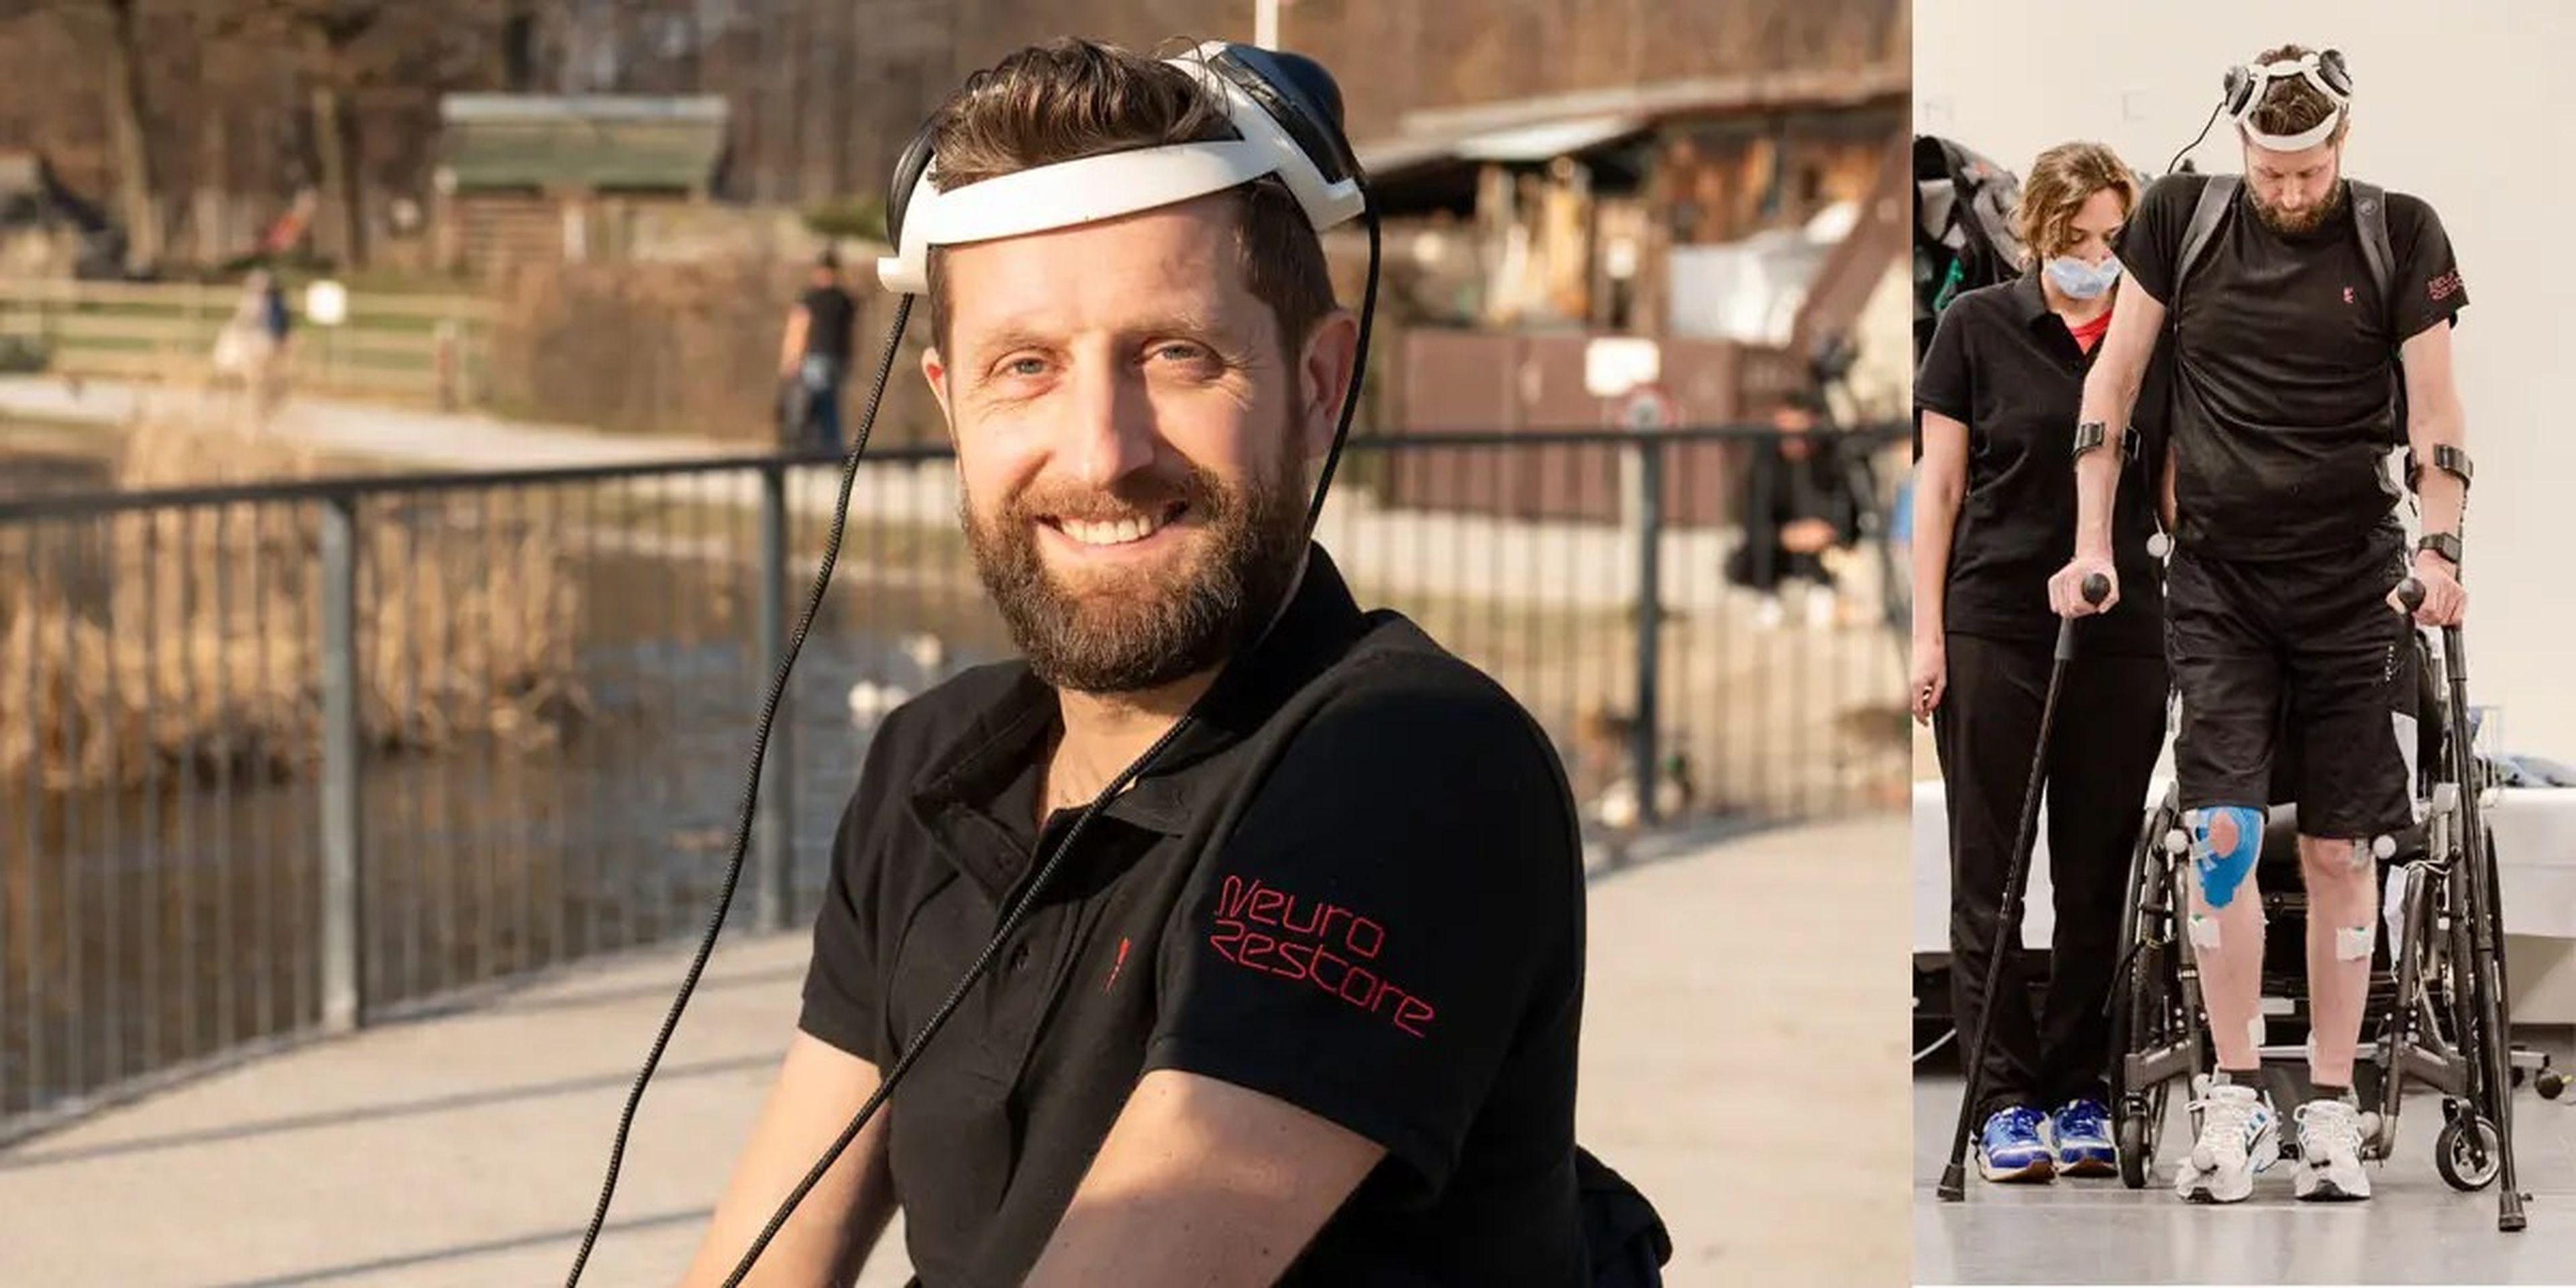 A la izquierda: Gert Jan sentado, con la gorra de la antena que se comunica con sus implantes cerebrales. A la derecha: Gert Jan entrenándose para poder andar.